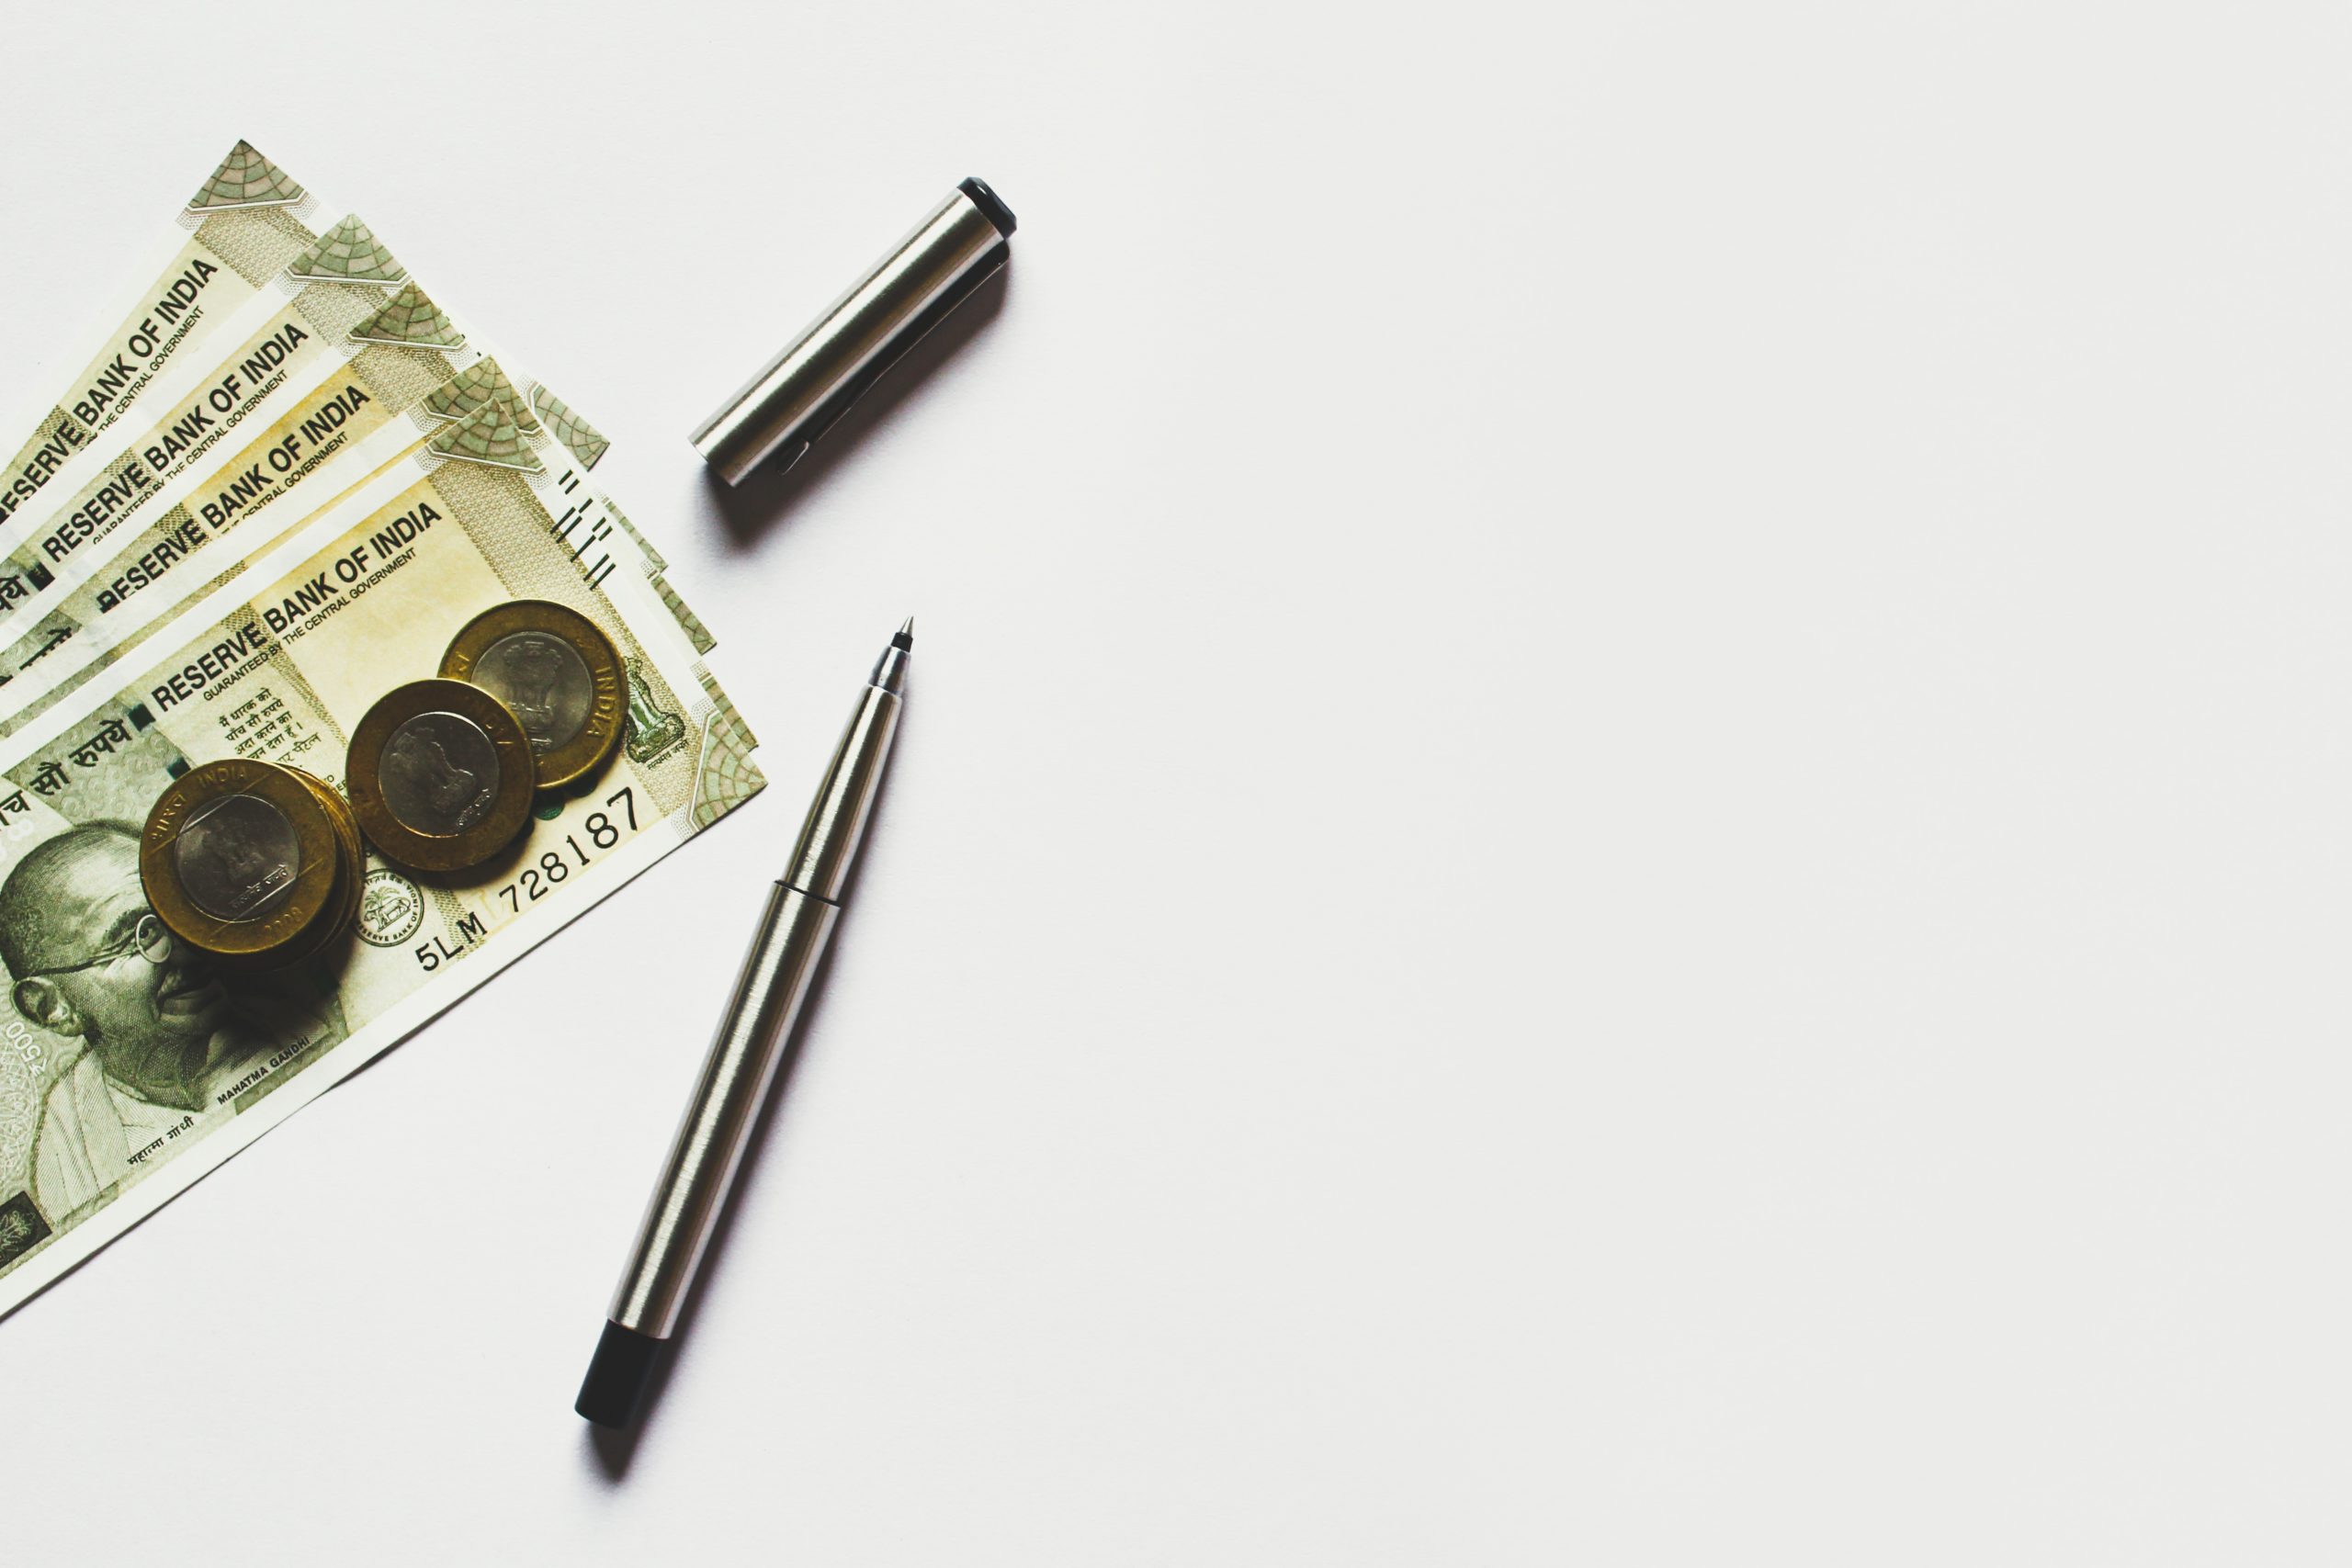 Briefgeld, muntgeld en een pen op een witte achtergrond